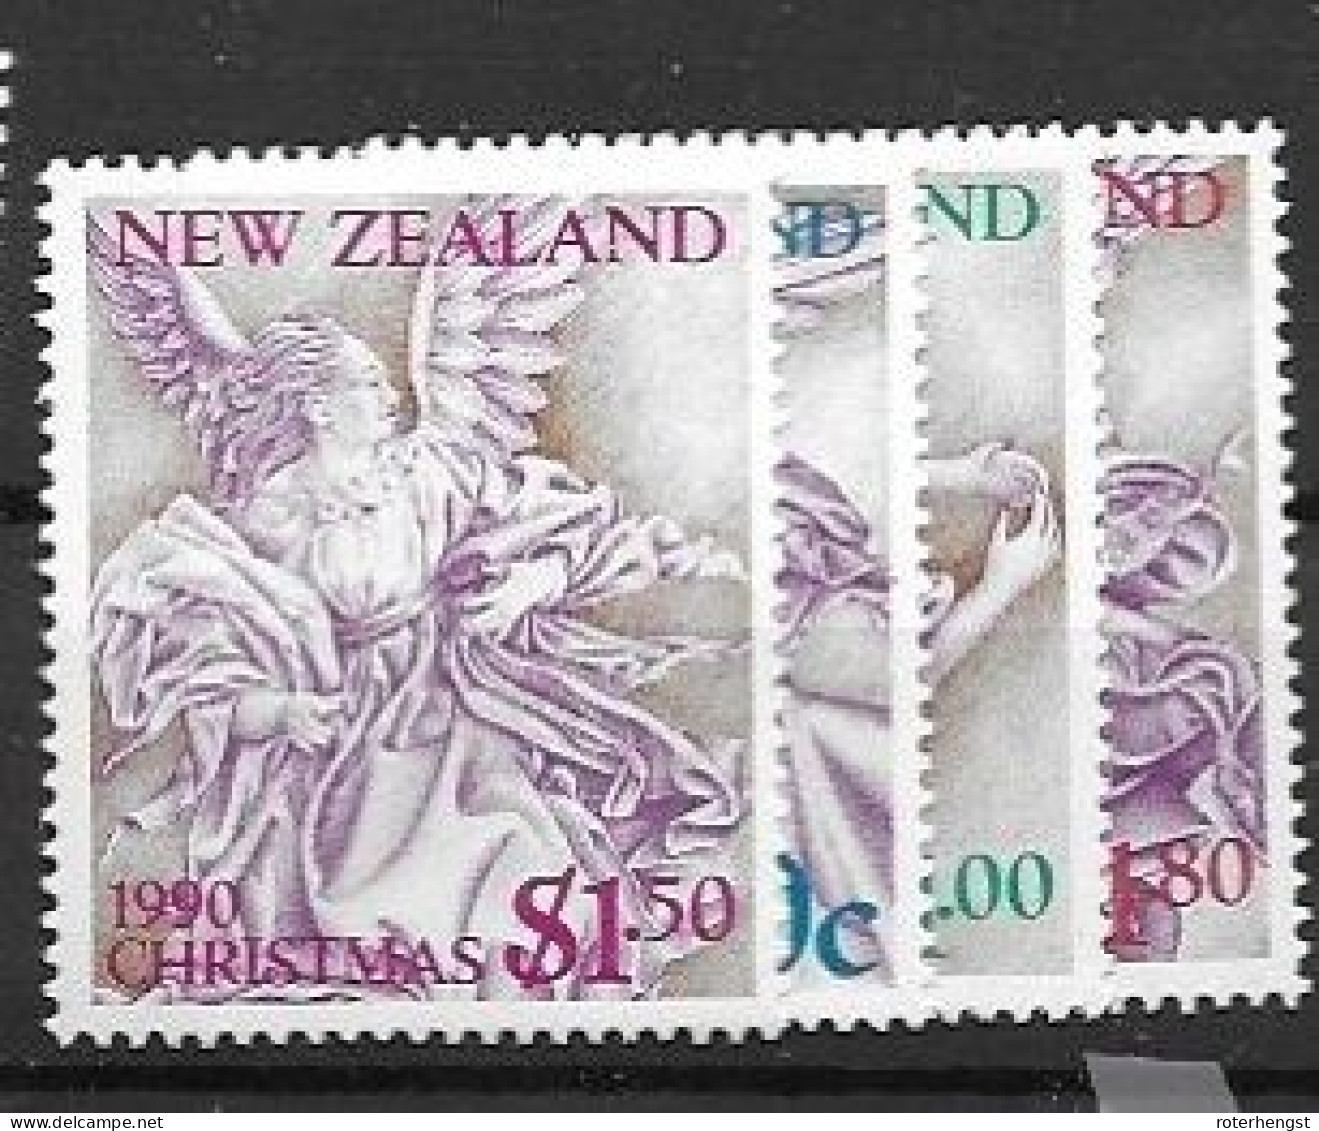 New Zealand Mnh ** Set 1990 6 Euros - Nuovi